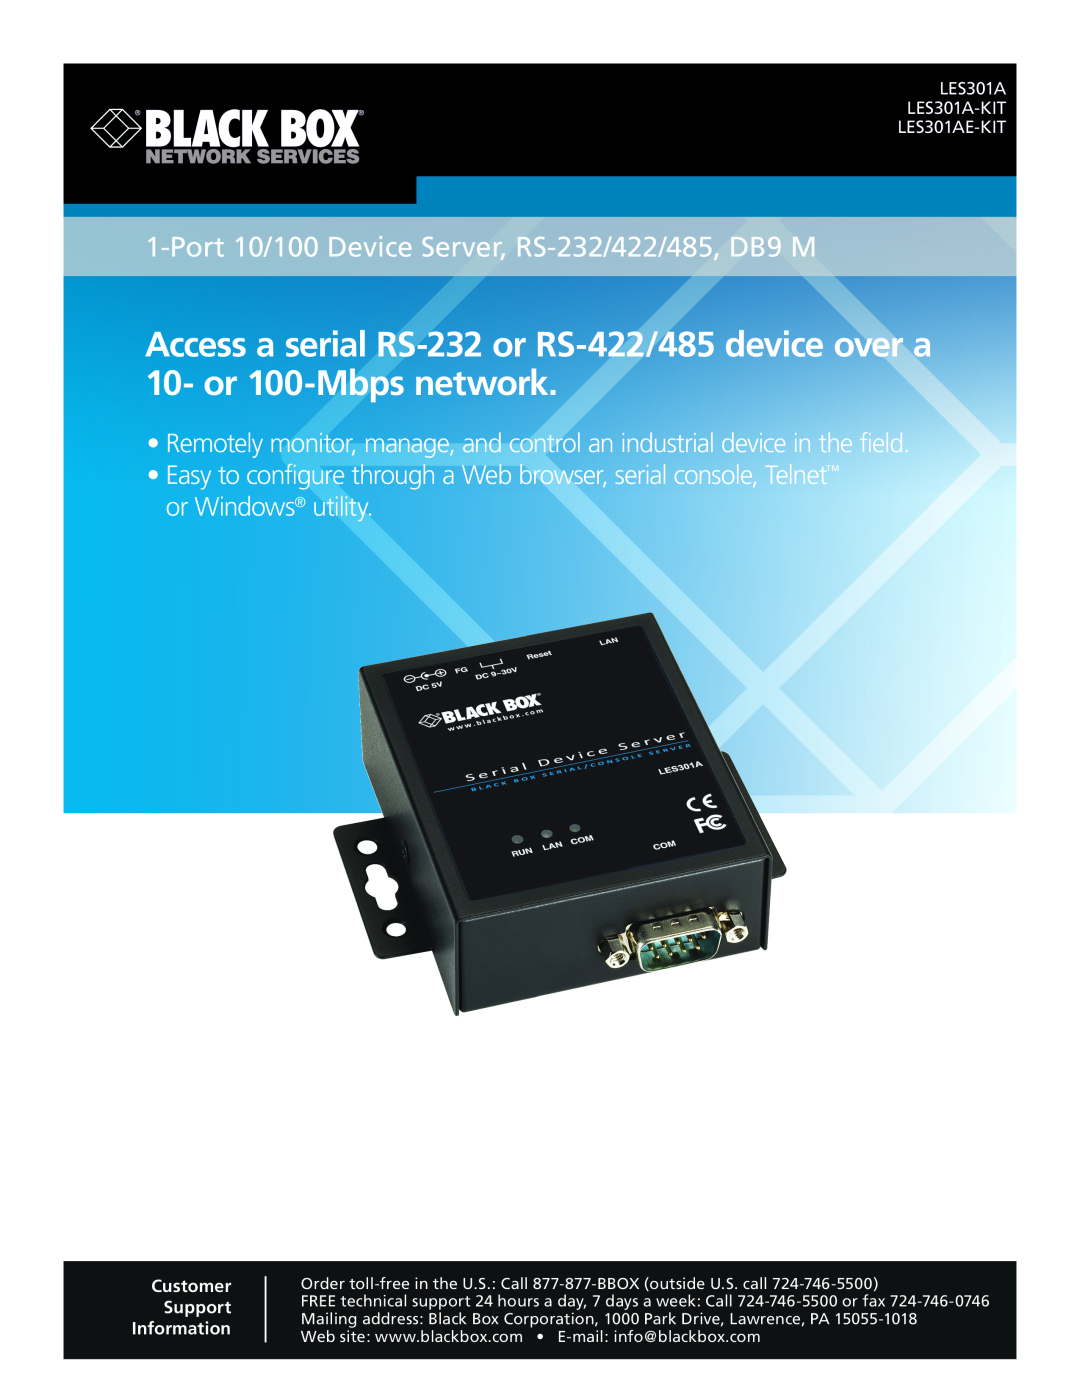 Black Box manual USB DIRECTOR RS-232, Key Features, Configurable COM port assignment 